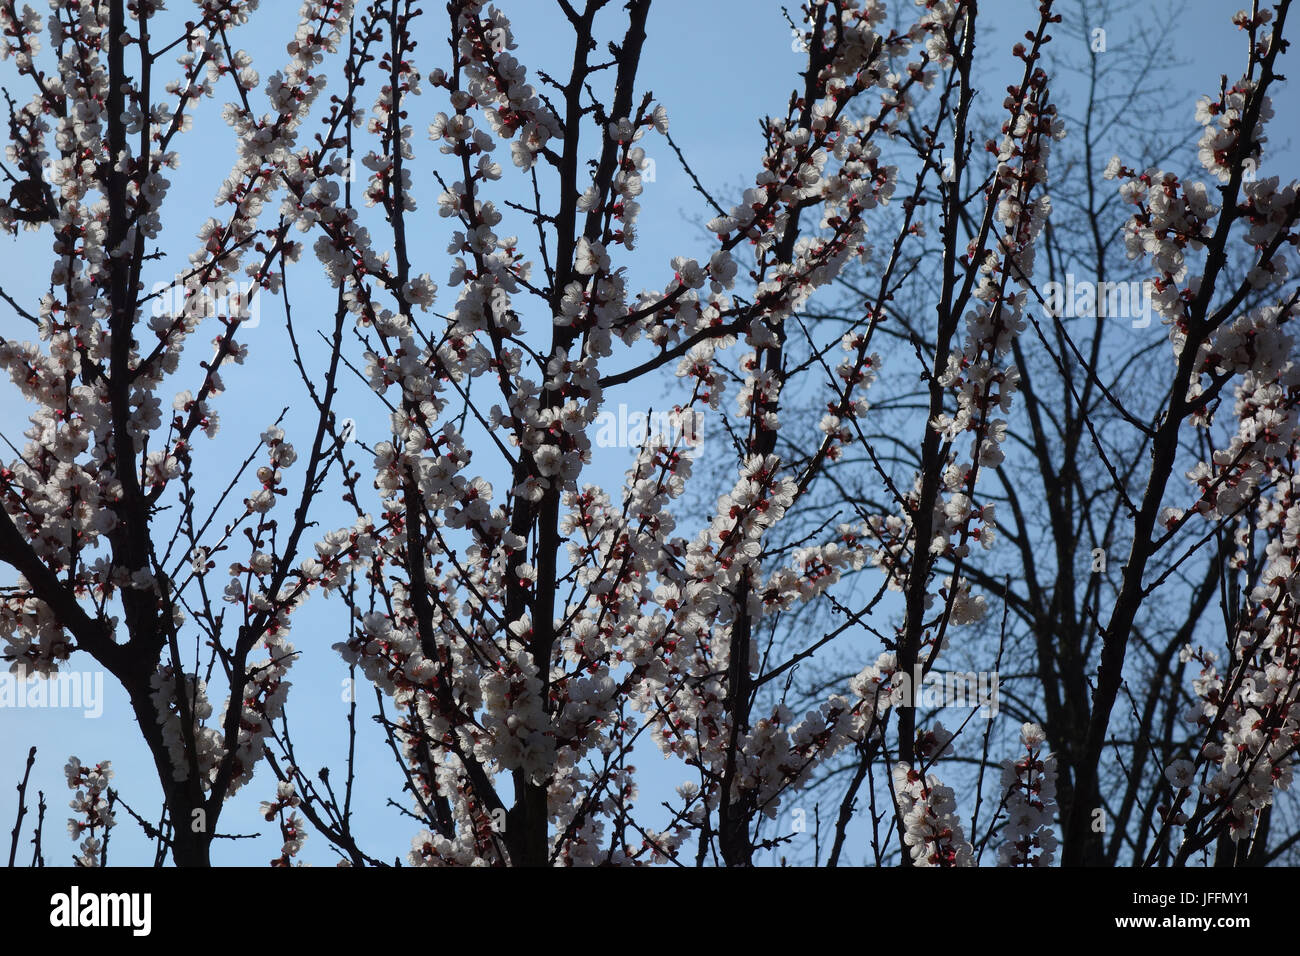 Prunus armeniaca, Apricot Stock Photo